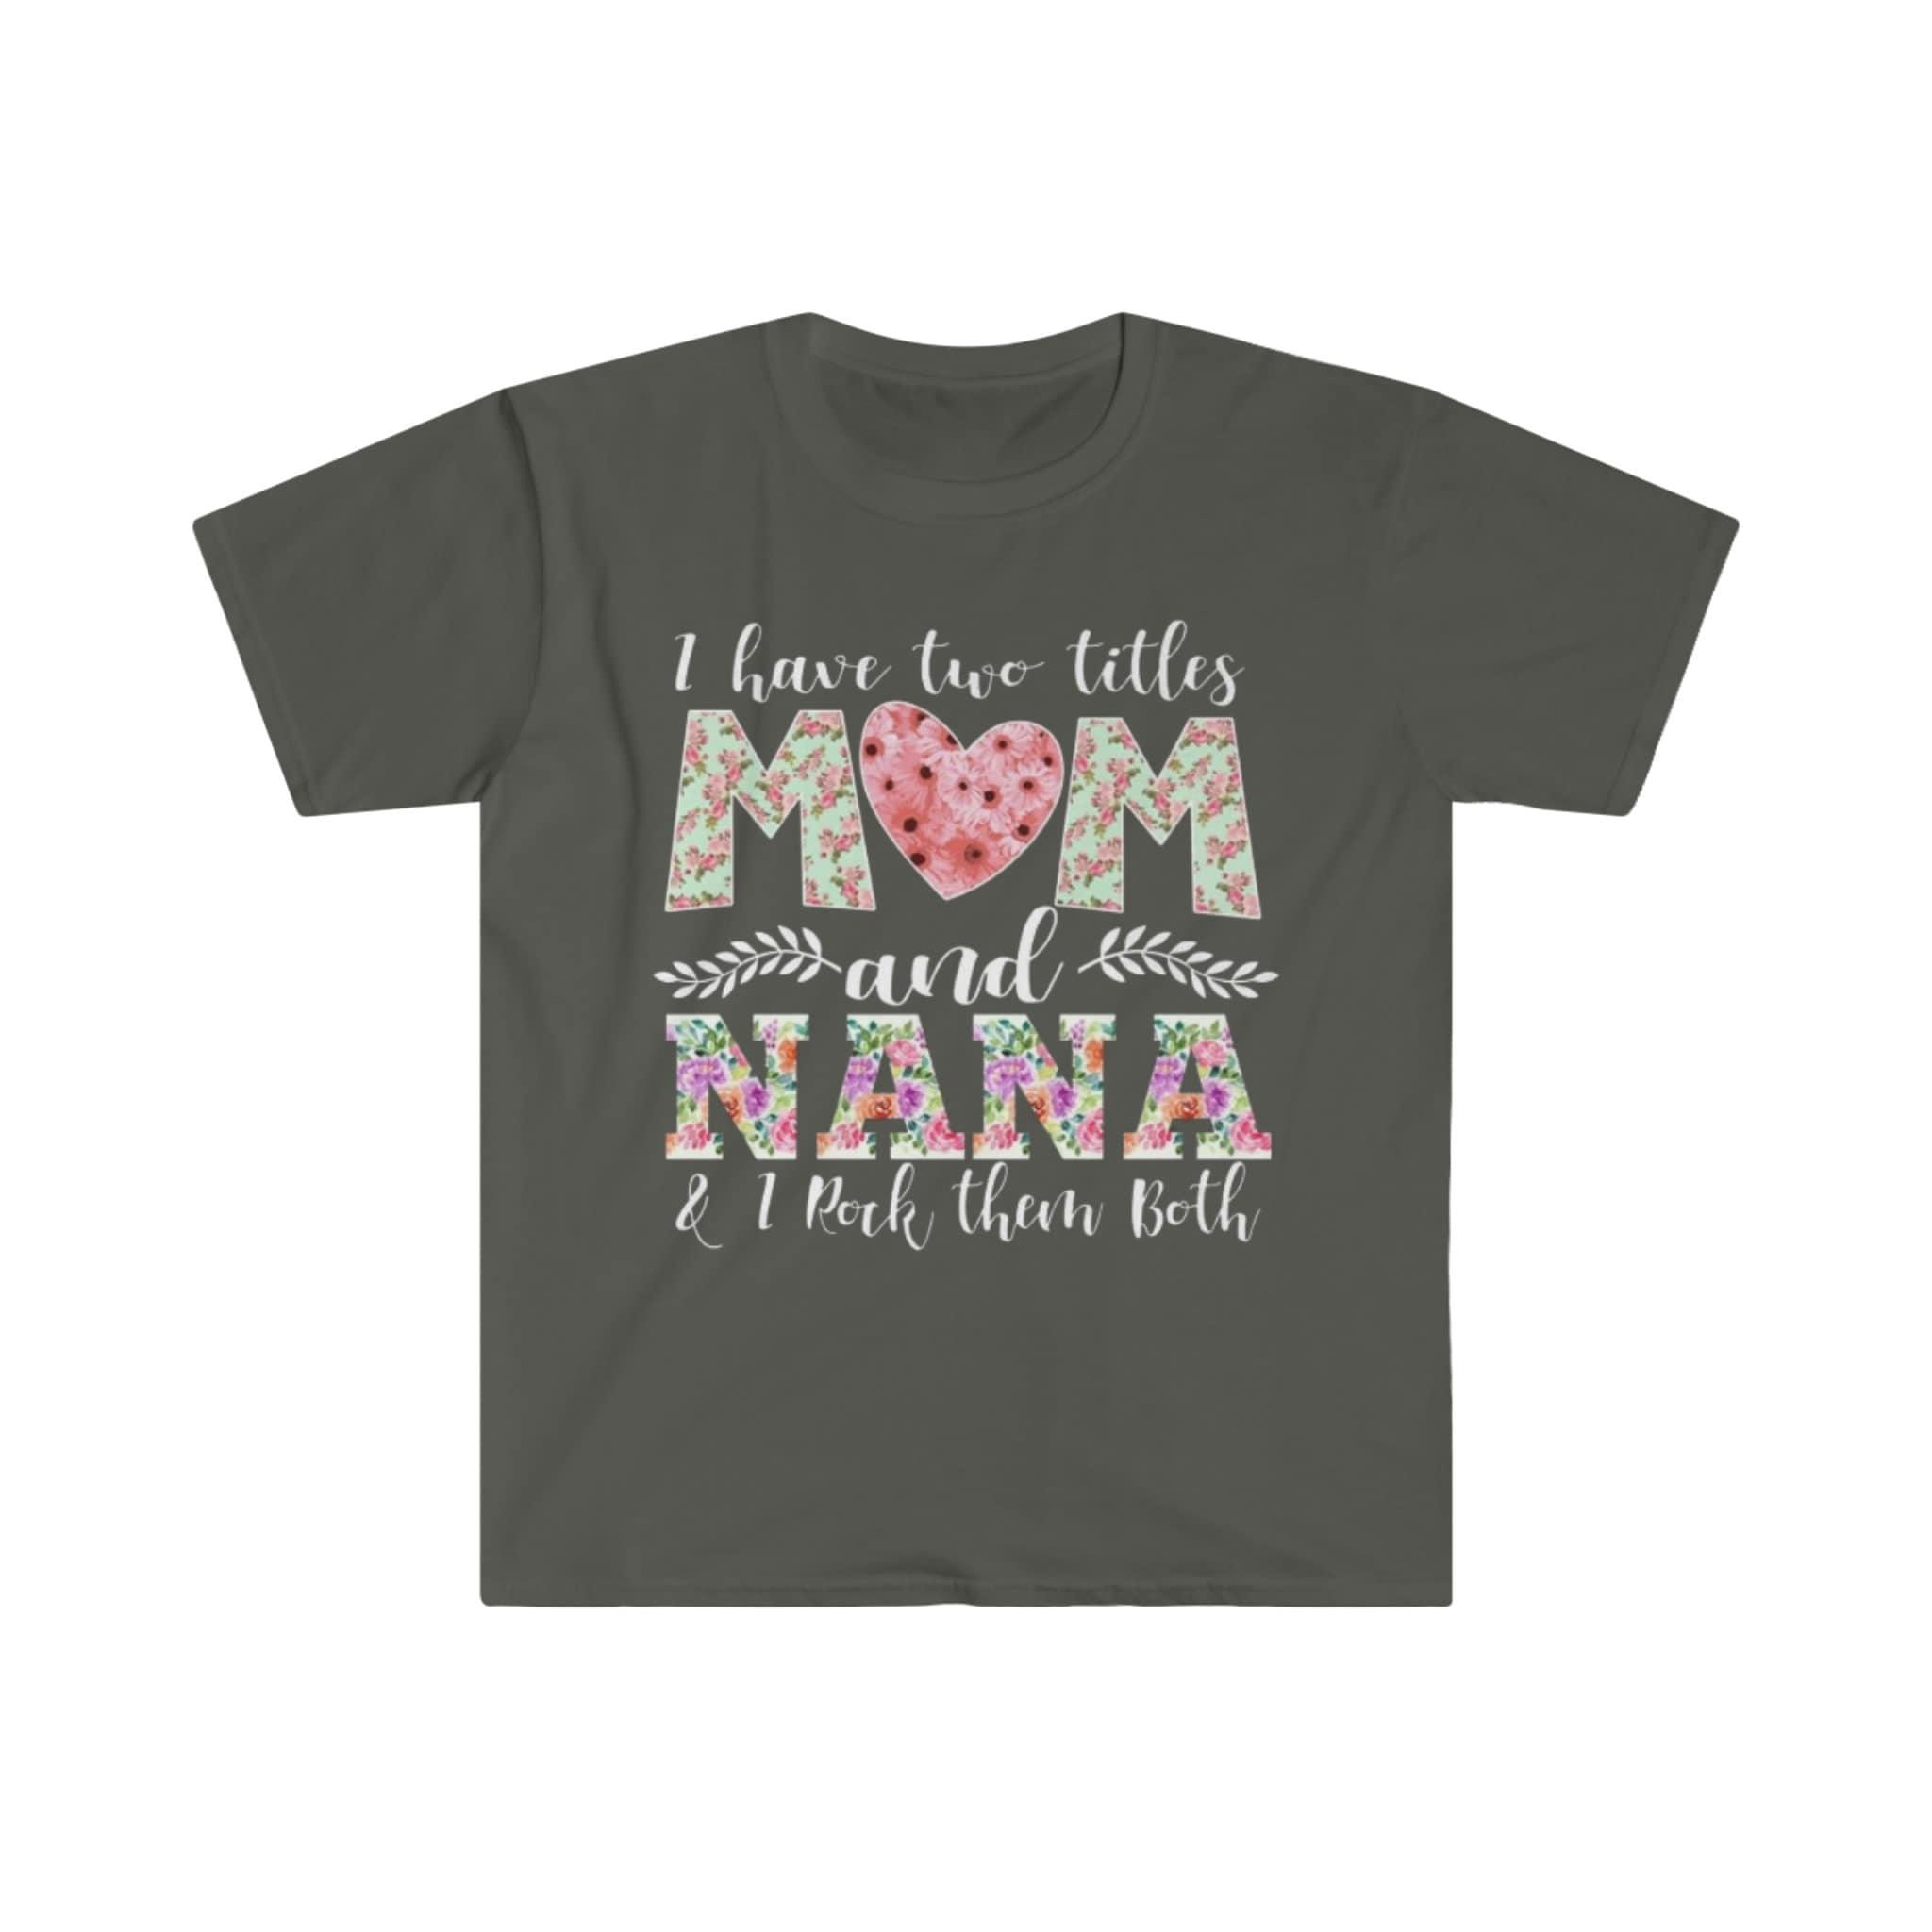 У мене є два титулу «Мама і бабуся», і я користуюся ними обома футболками, сорочкою «Нана», новою футболкою для бабусі, футболкою для бабусі та мами, подарунком для бабусі - plusminusco.com